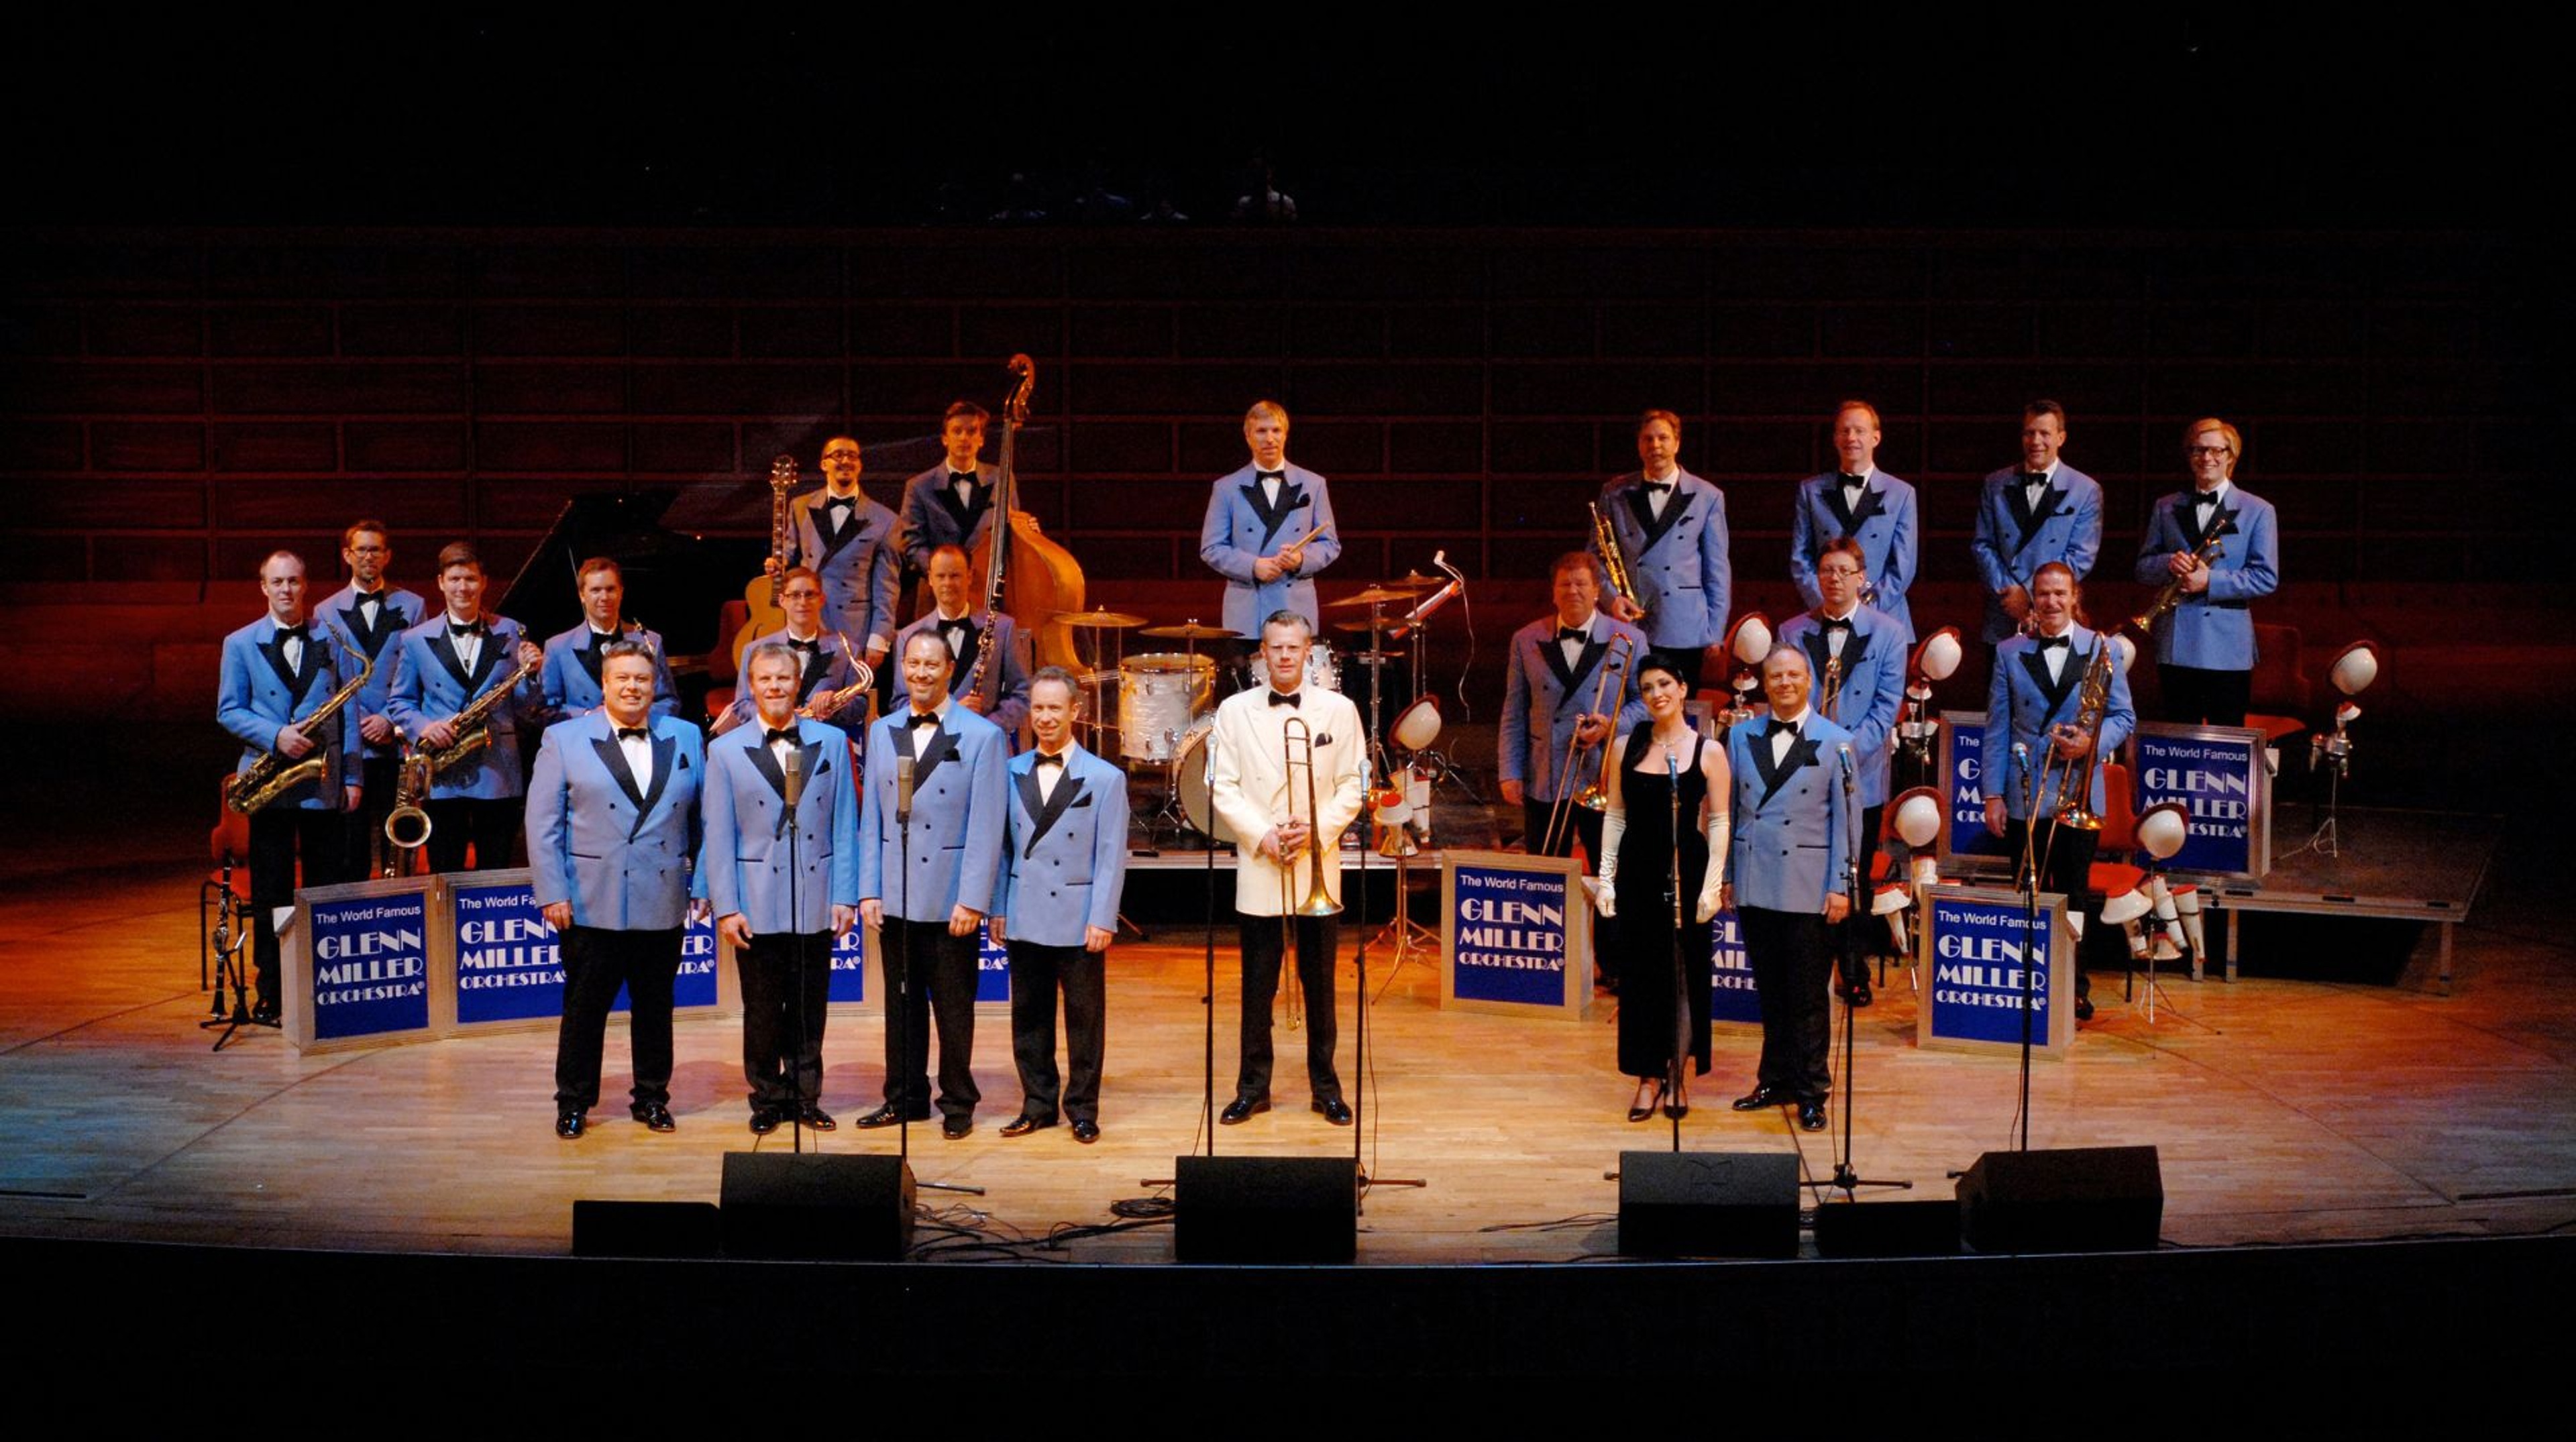 Orkestern står uppställda på scen iklädda blå kostymer. 